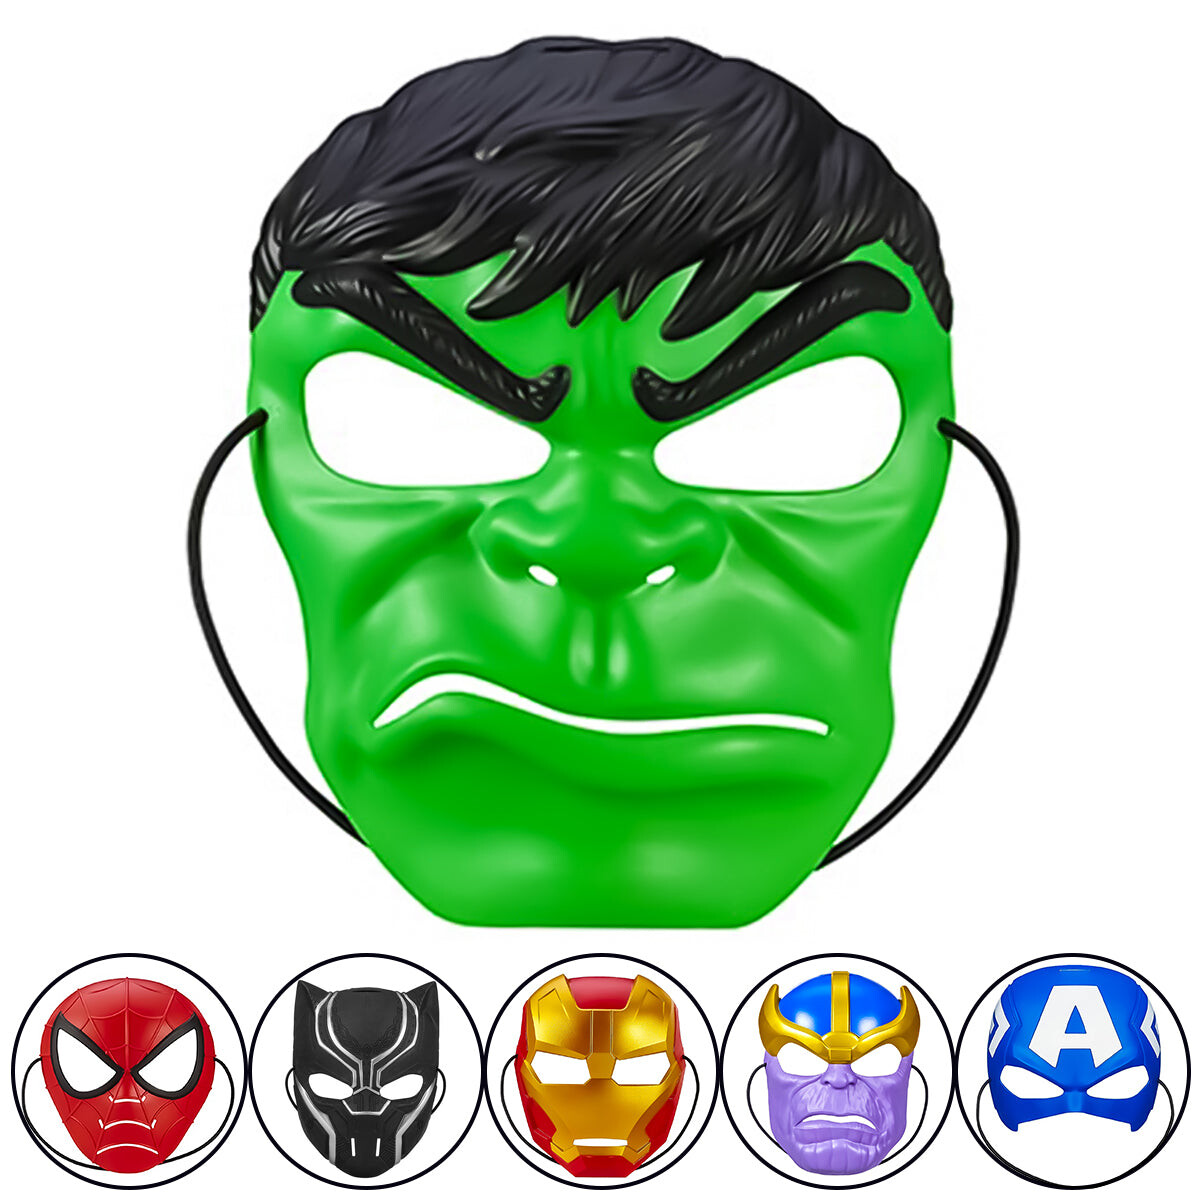 Máscara Hasbro Marvel Avengers Ironman Spiderman Hulk - Hulk 